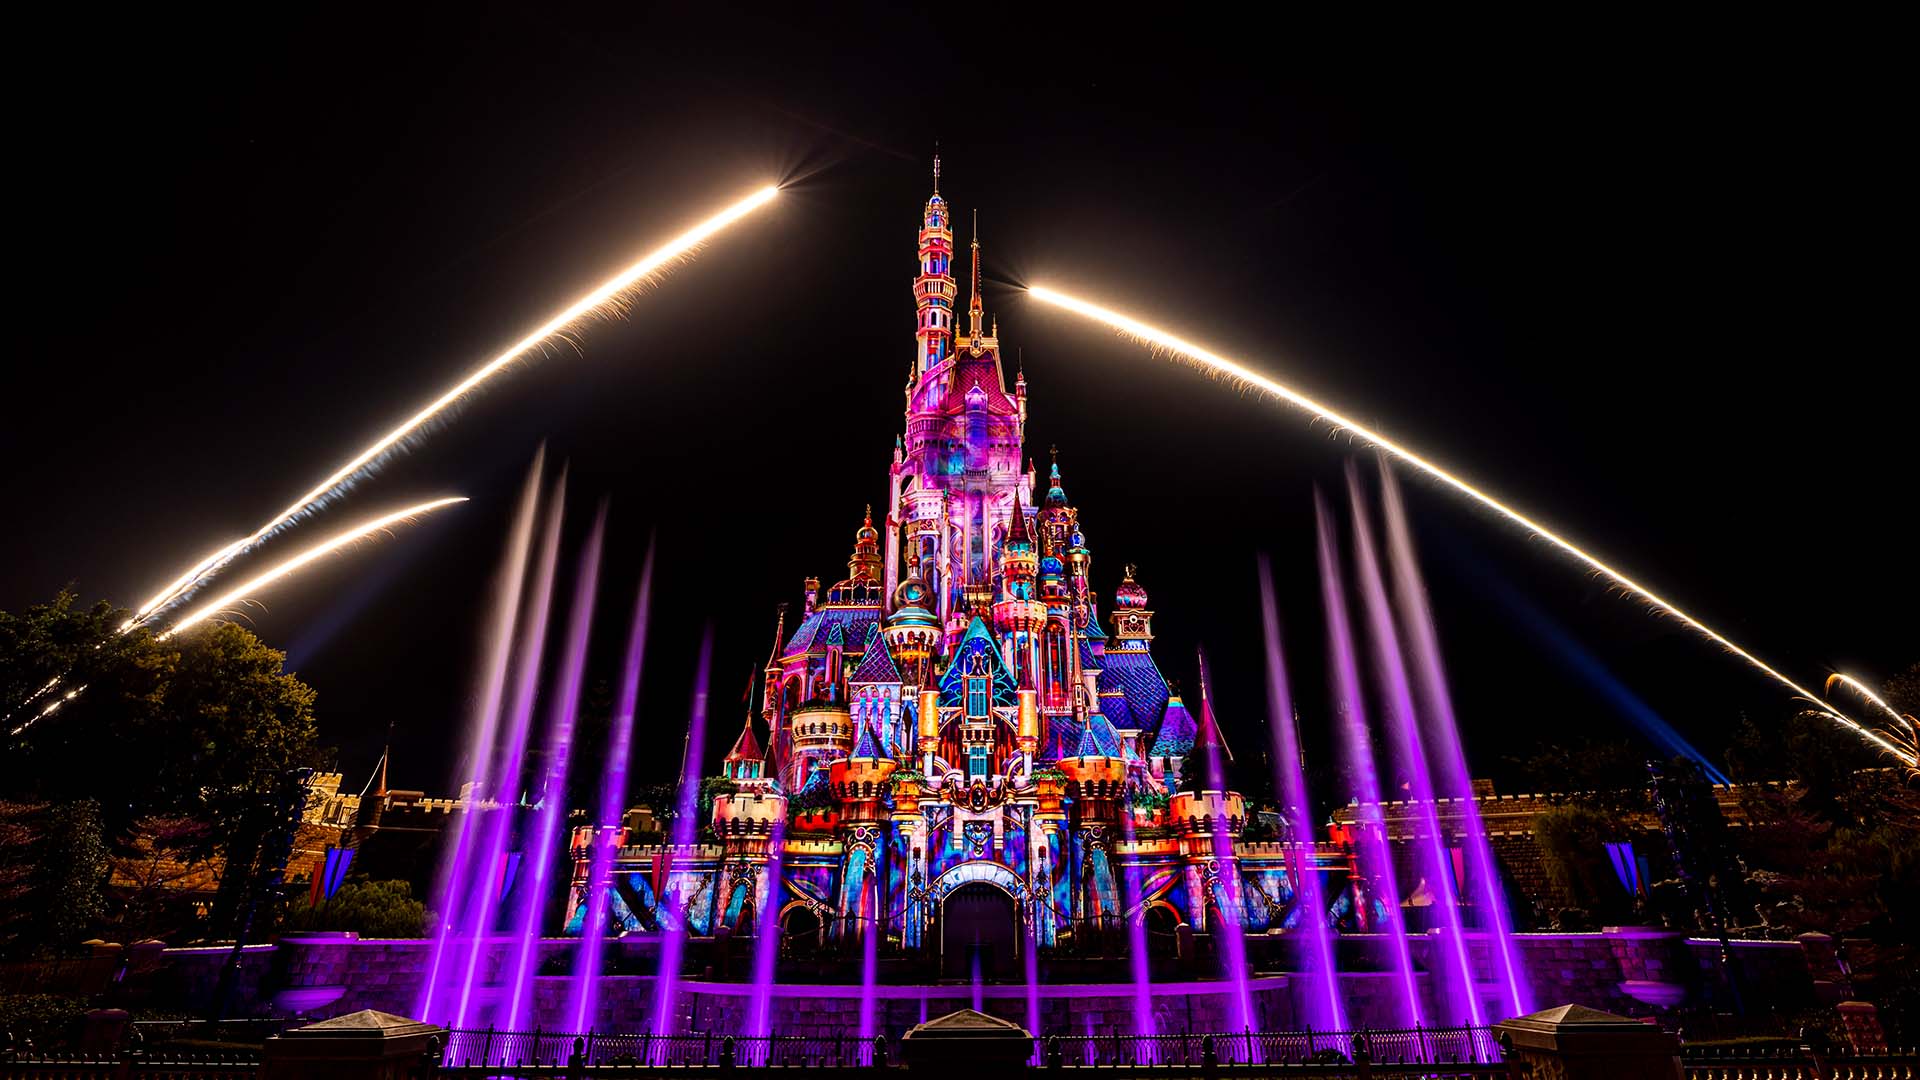 Khám phá Disneyland Hong Kong: Thiên đường cổ tích dành cho mọi lứa tuổi - 1